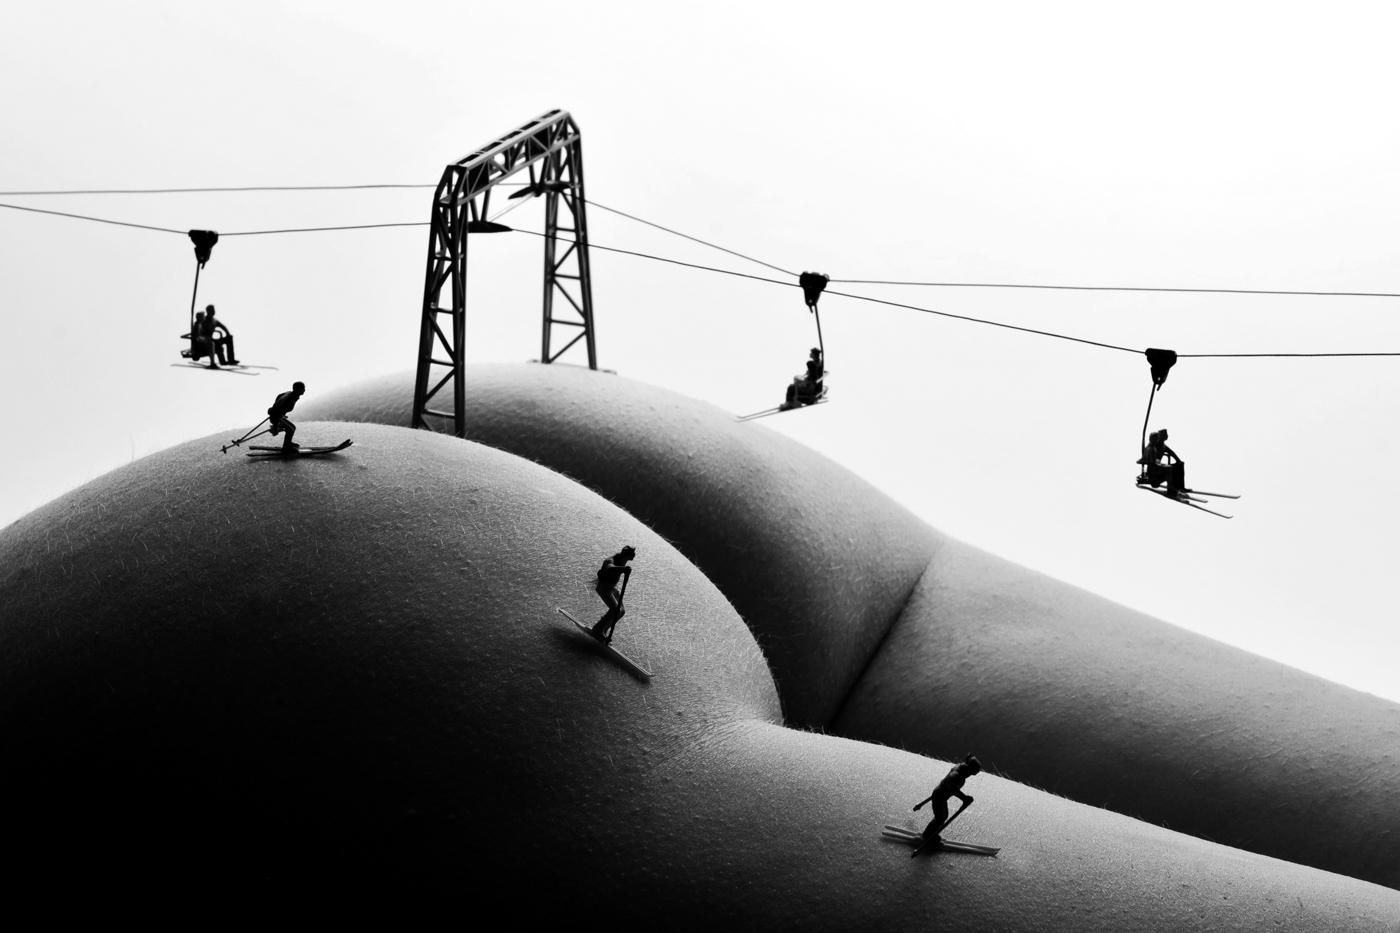 Station de ski  La photographie en noir et blanc - Photograph de Allan I. Teger